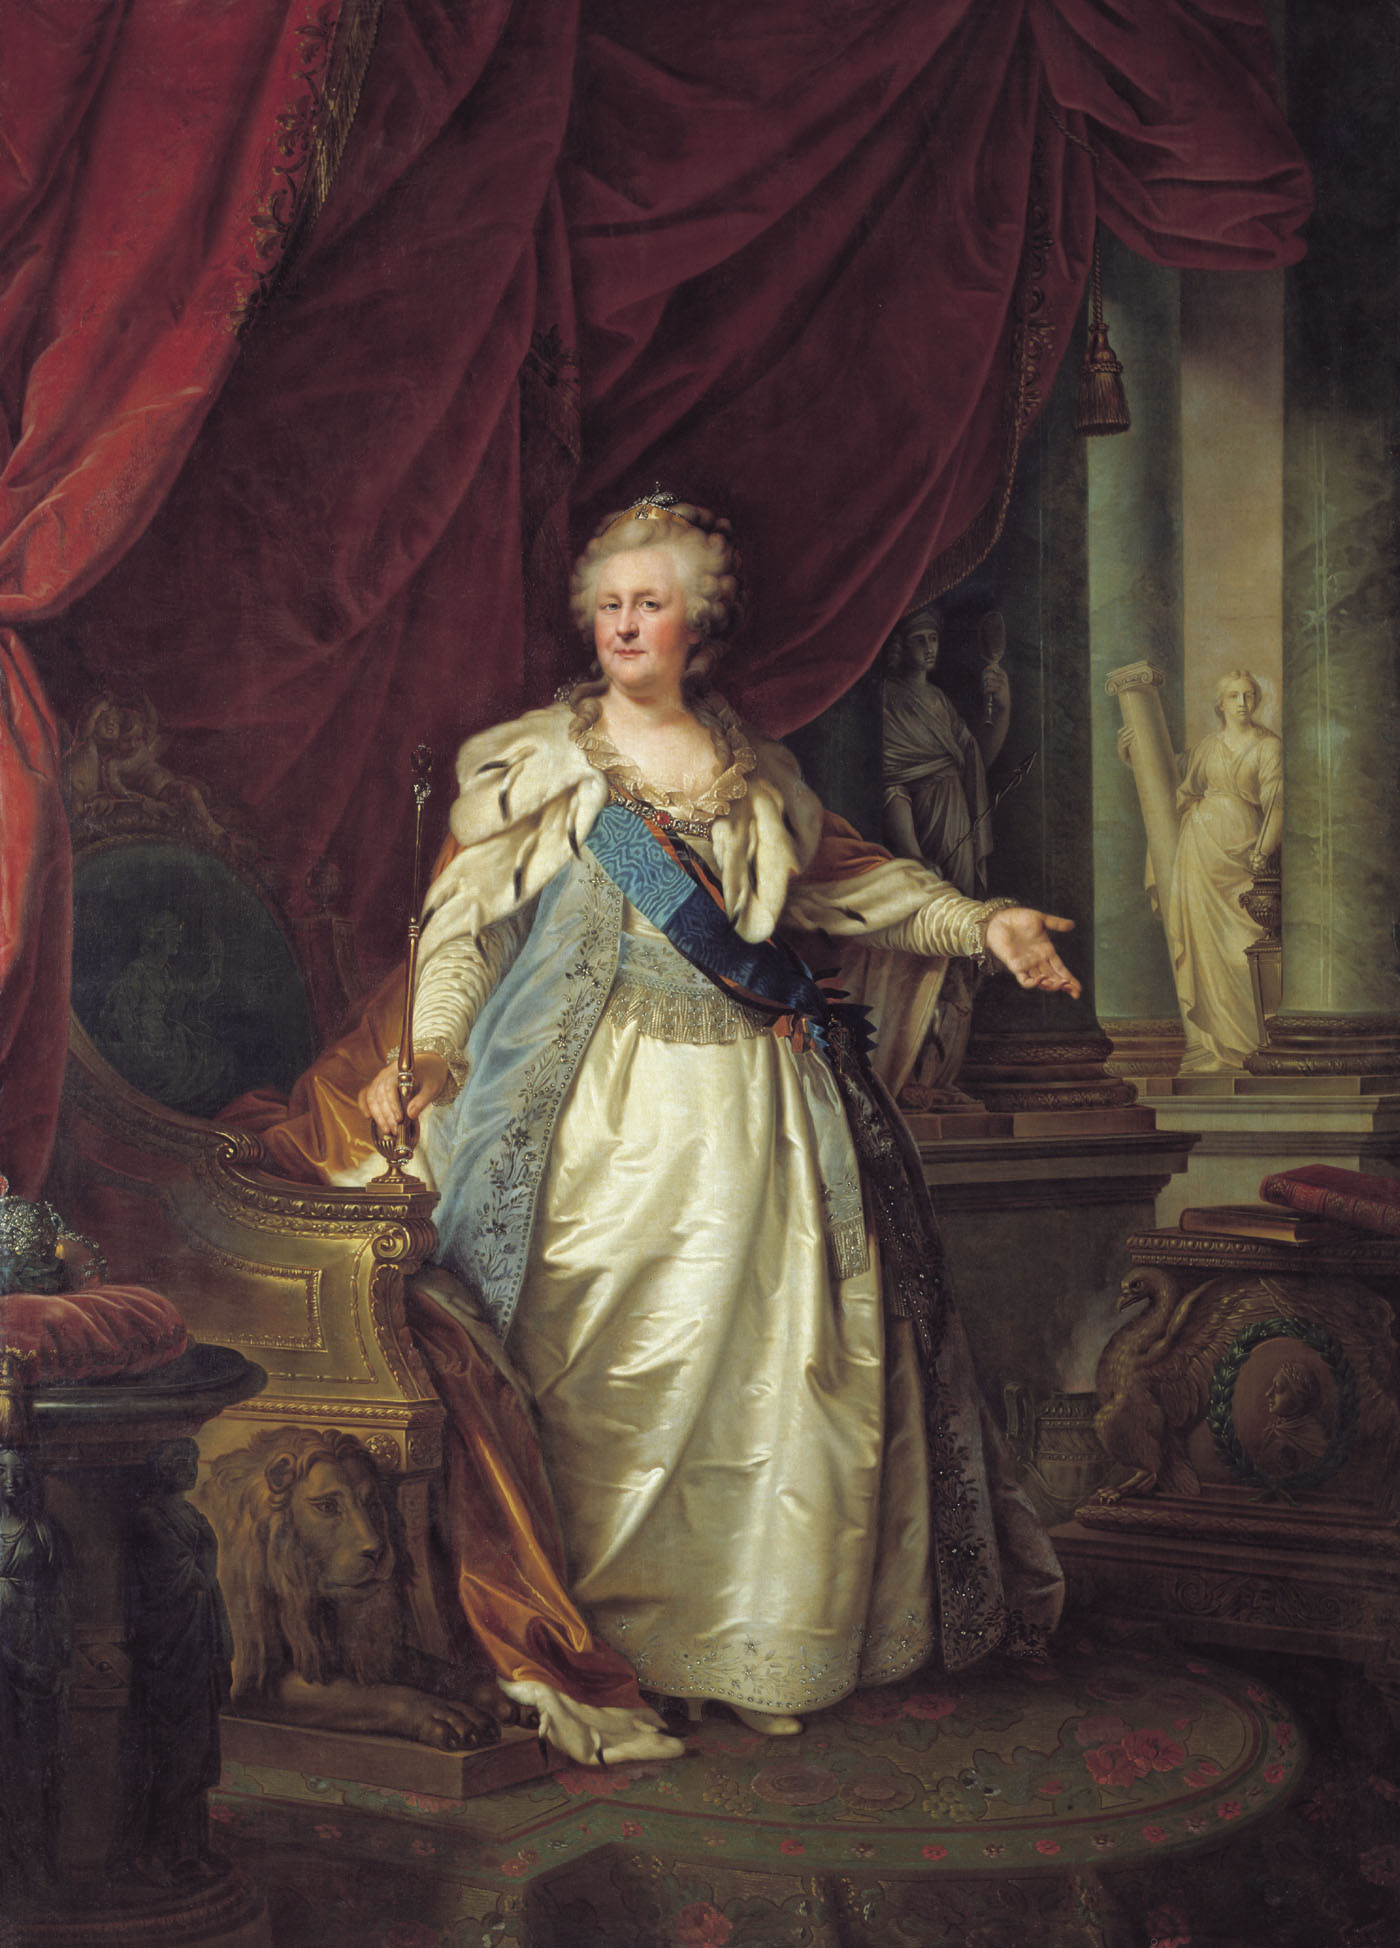 Иоганн Лампи Старший. Портрет императрицы Екатерины II с аллегорическими фигурами.